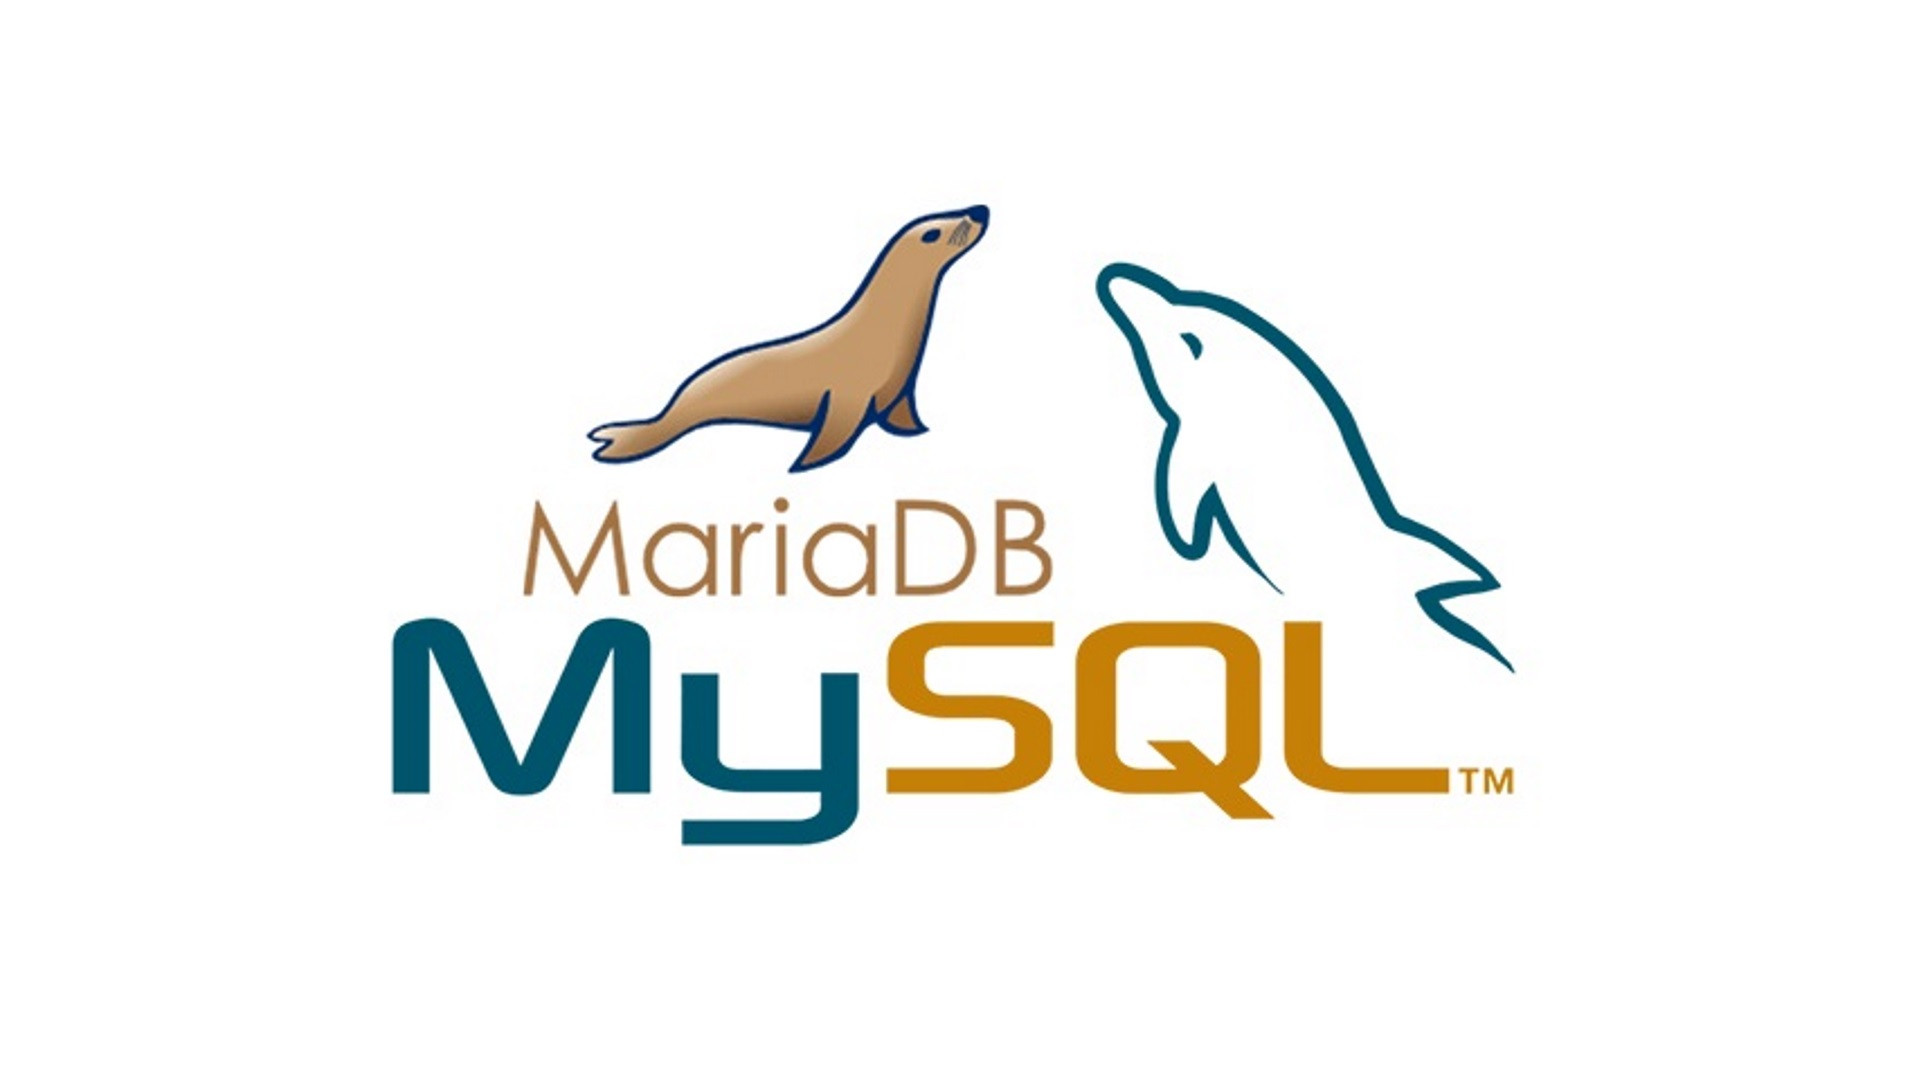 cPanel MySQL MariDB Yükseltme Sorun Çözümü resim